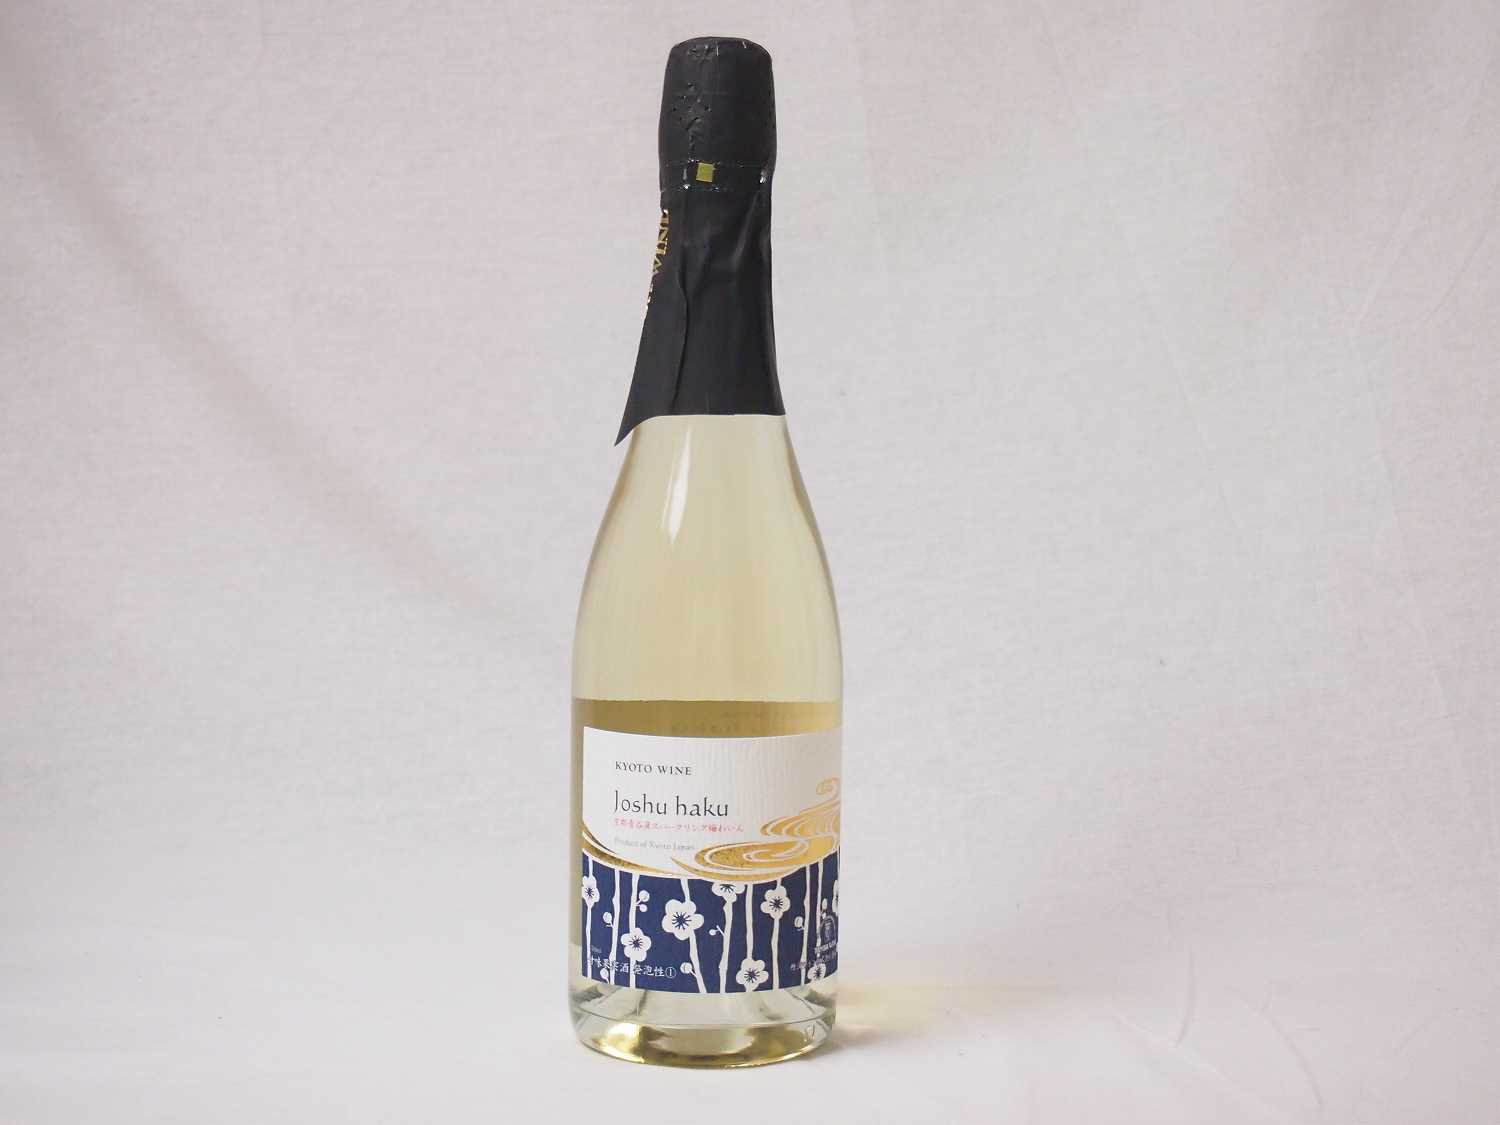 国産フルーツ梅スパークリングワイン Joshu haku 京都山城青谷産城州白梅スパークリング やや甘口 丹波ワイン (京都府) 750ml×1本京都青谷の城州白梅を100％使用したスパークリングワインです。梅を原料としながらも、まるで寒冷地のドイツワインを思わせる高貴な味わい。青梅の豊かなアロマと若草のようなすがすがしいニュアンス。ミネラルの風味を感じ、軽快な酸味とボディを備えています。白身魚のムニエルや白味噌漬けなどと相乗します。京都青谷の城州白梅を100％使用したスパークリングワインです。梅を原料としながらも、まるで寒冷地のドイツワインを思わせる高貴な味わい。青梅の豊かなアロマと若草のようなすがすがしいニュアンス。ミネラルの風味を感じ、軽快な酸味とボディを備えています。白身魚のムニエルや白味噌漬けなどと相乗します。城州白梅　梅ワインタイプ 梅ワイン・発泡性味わい 甘口梅品種 城州白梅梅産地 京都府城陽アルコ-ル 10％